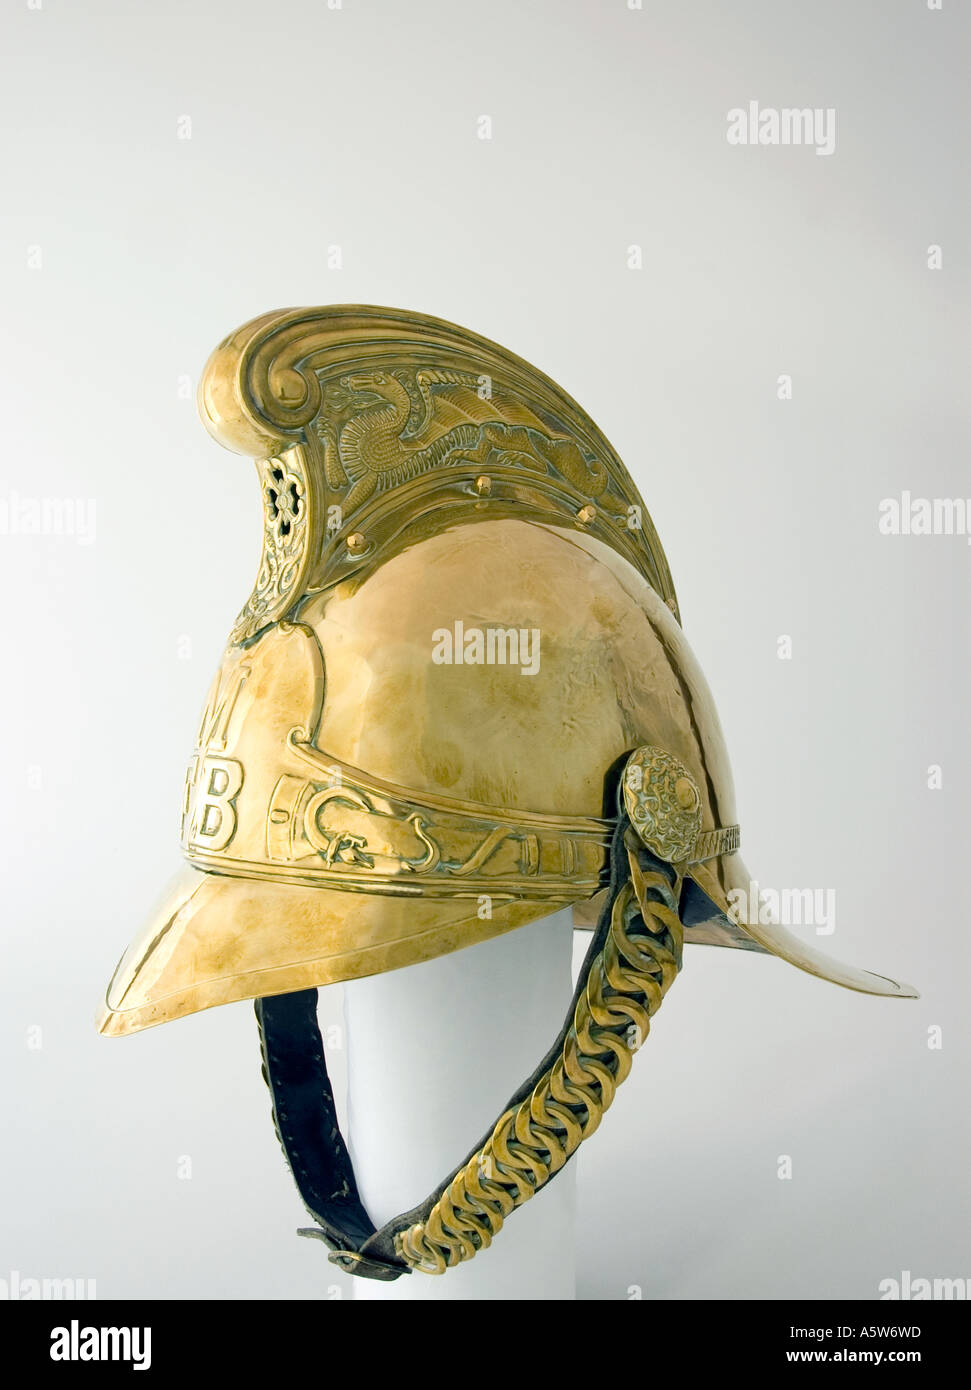 Closeup detail of a brass firemans helmet. DSC_8566 Stock Photo